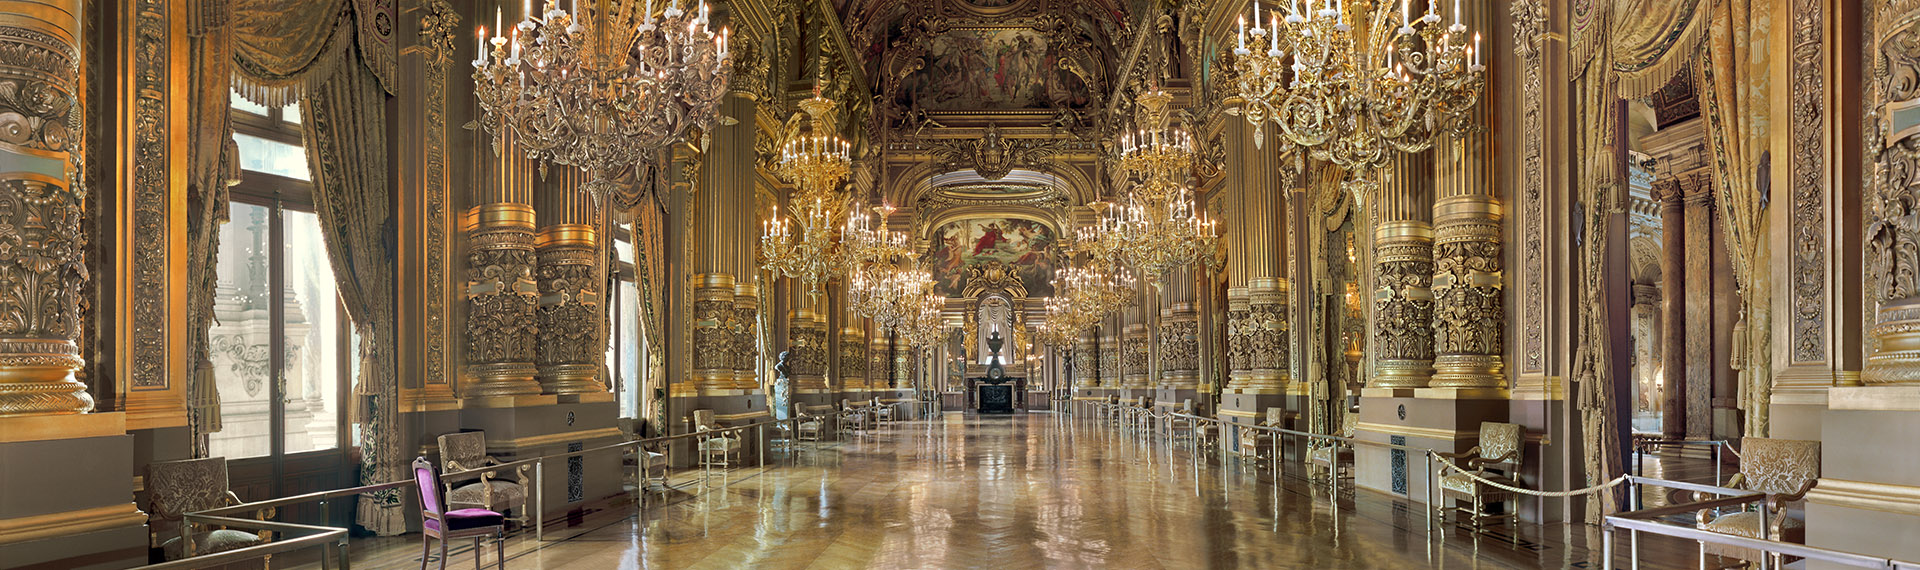 Un panorama du Grand Foyer du palais Garnier. HEIGHT=570 WIDTH=1920